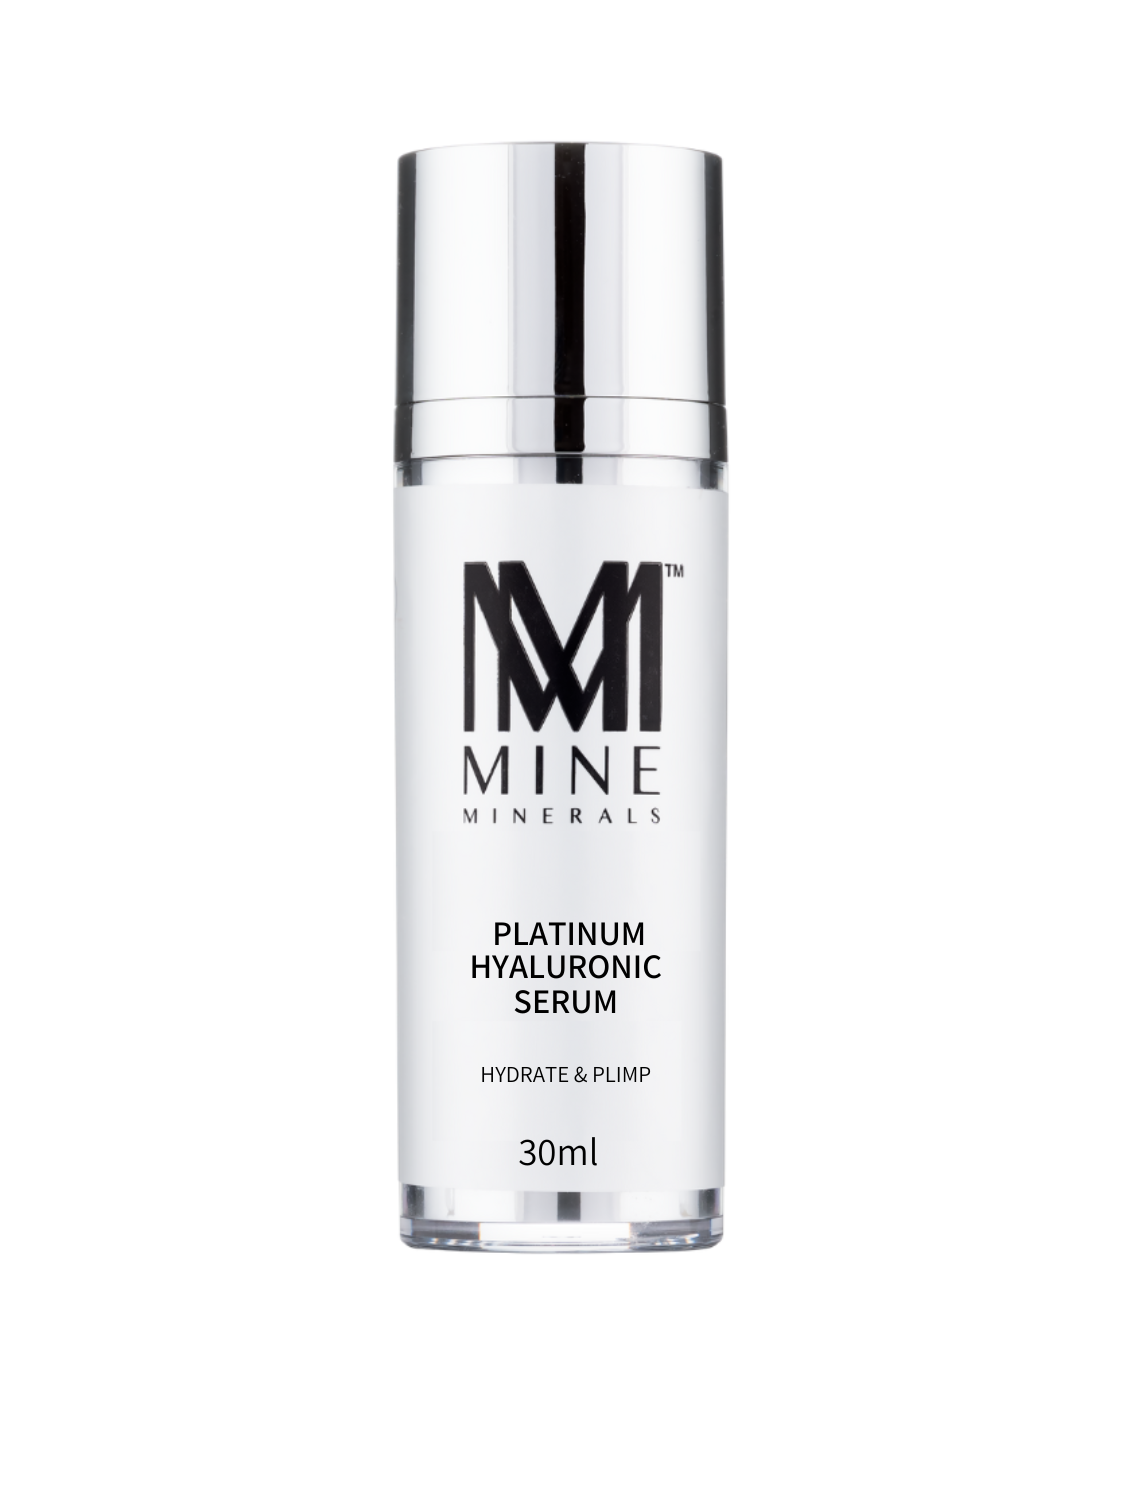 Platinum Hyaluronic Serum - 30ml - Mine Minerals